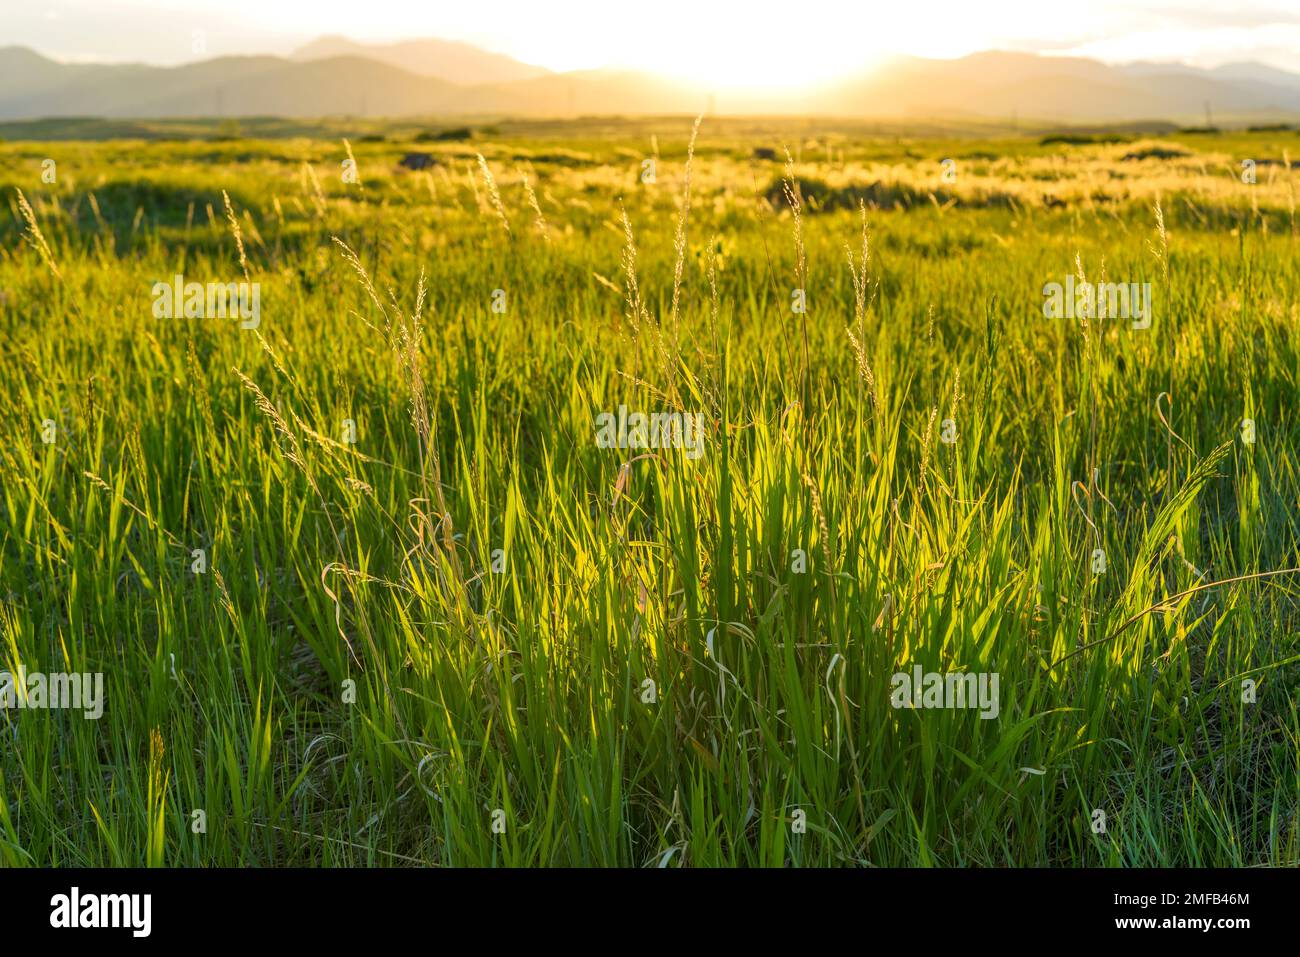 Sunset Meadow - coucher de soleil de printemps dans un pré de montagne. South Table Mountain Park, Denver-Golden-Lakewood, Colorado, États-Unis. Banque D'Images